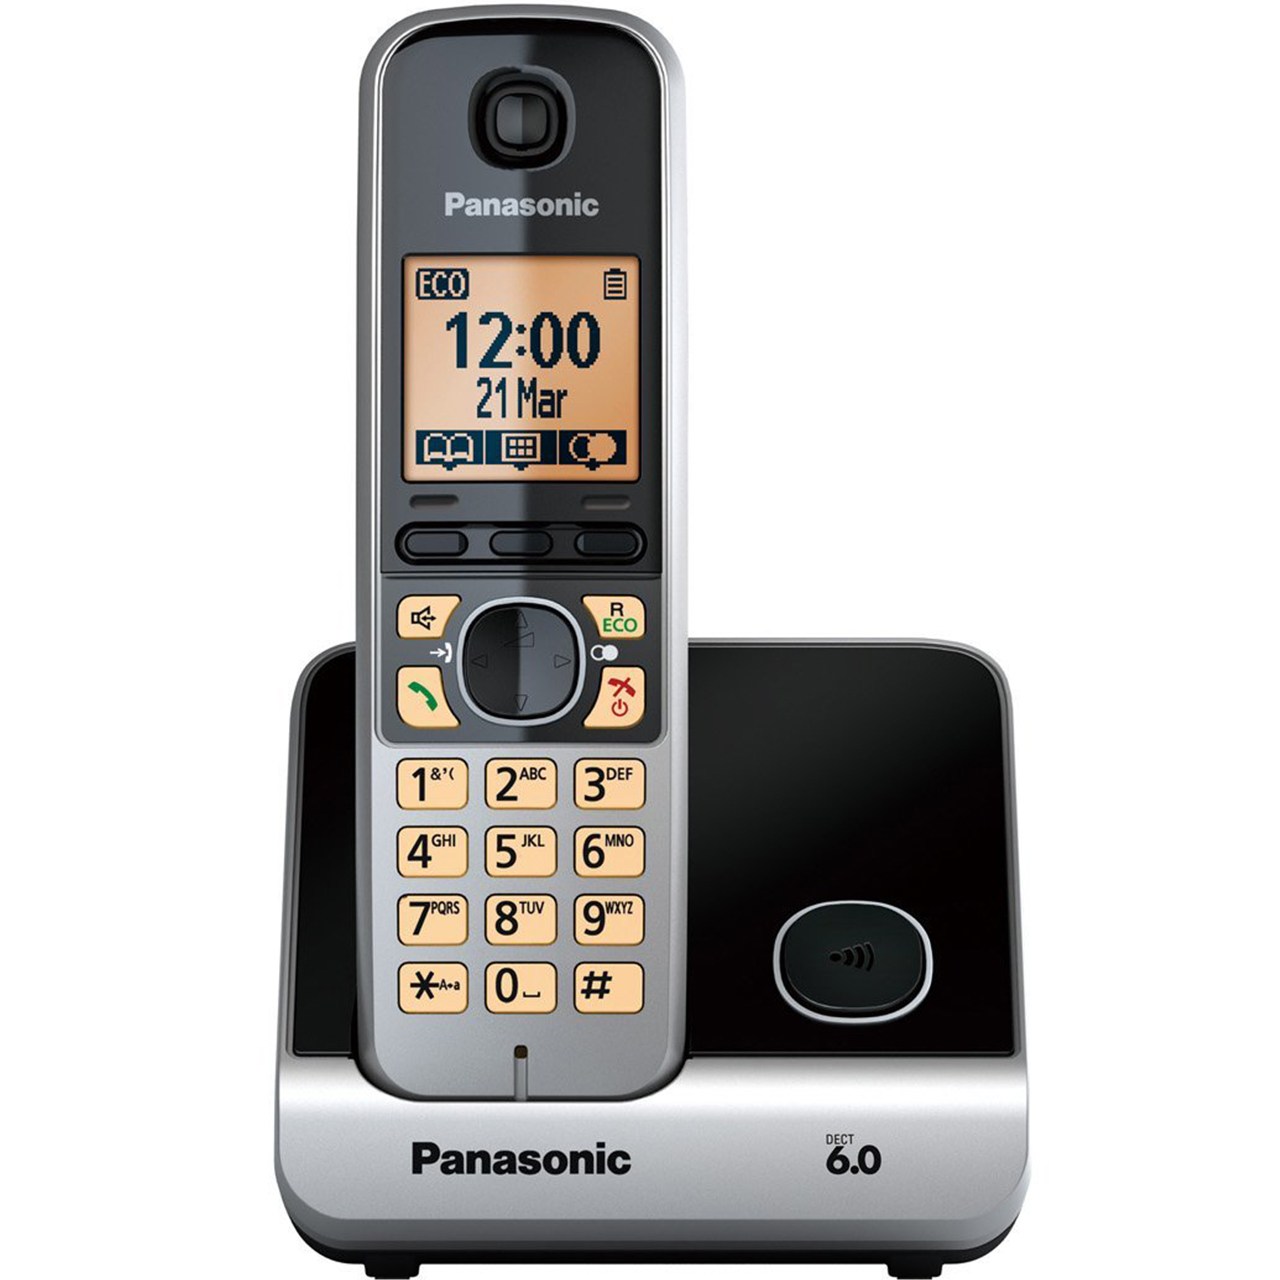  تلفن بی سیم پاناسونیک مدل KX-TG6711 ا Panasonic Digital Cordless Phone - KX-TG6711